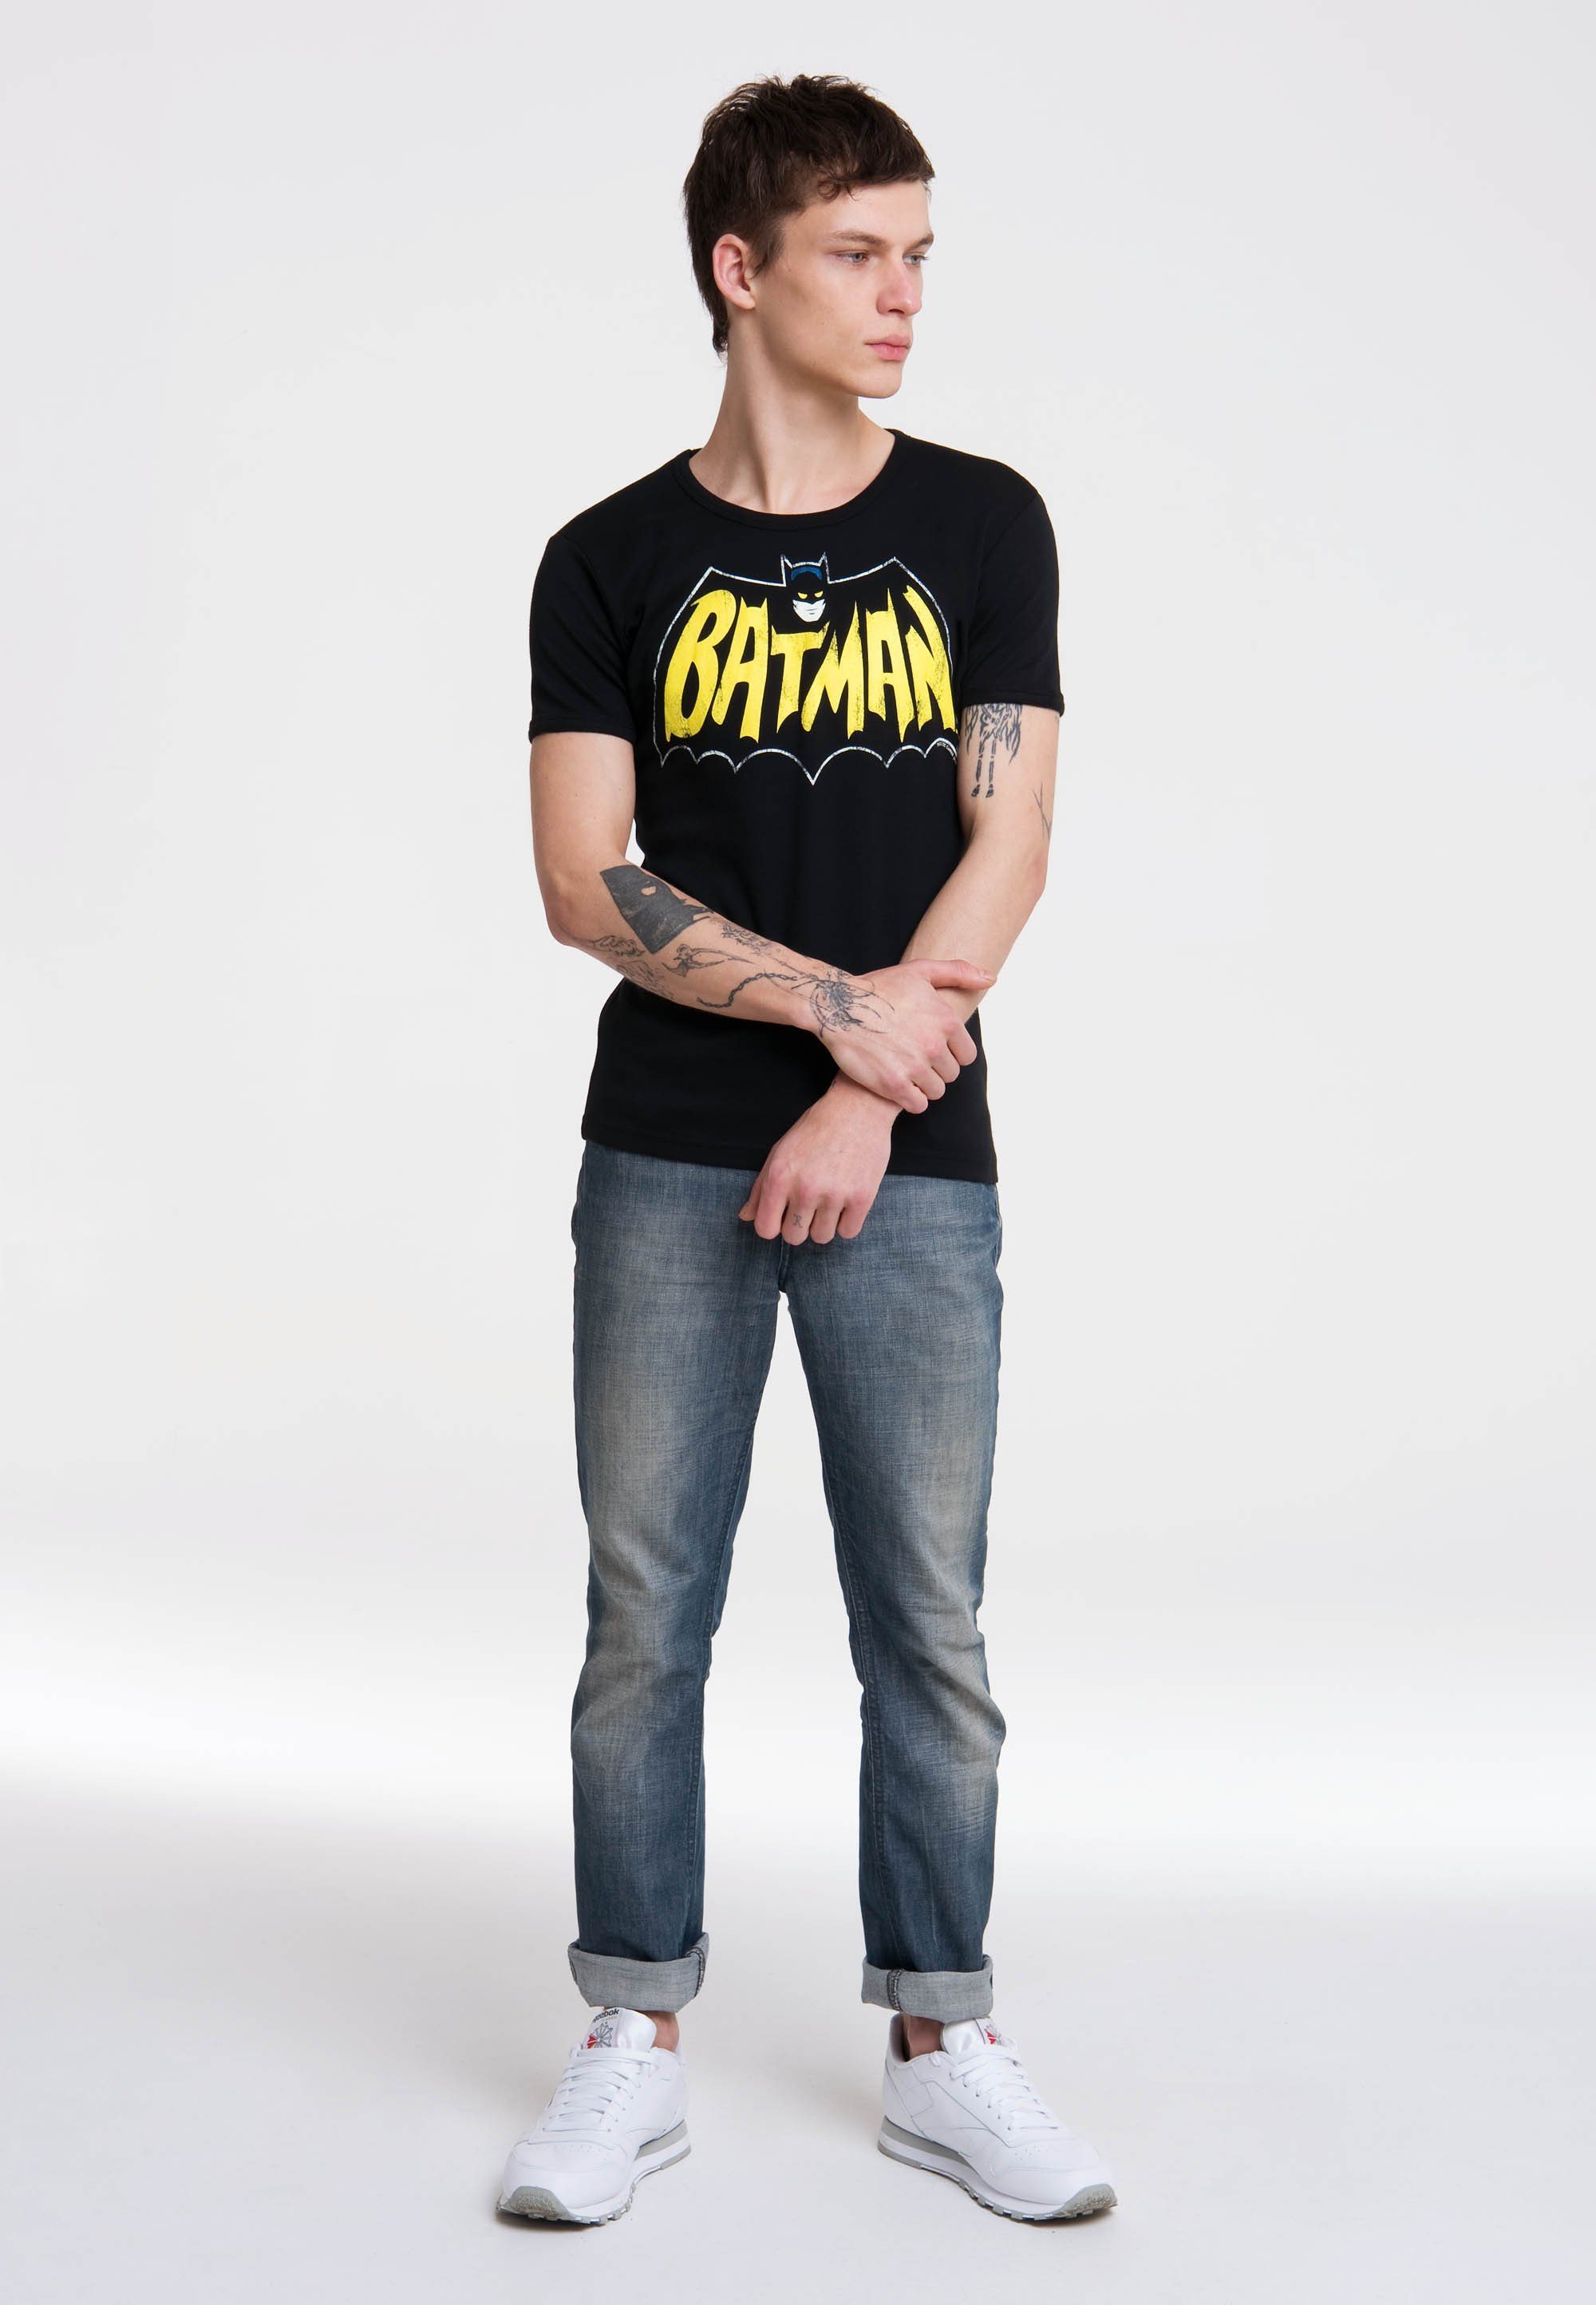 LOGOSHIRT Bat Batman-Frontprint – Batman T-Shirt mit auffälligem